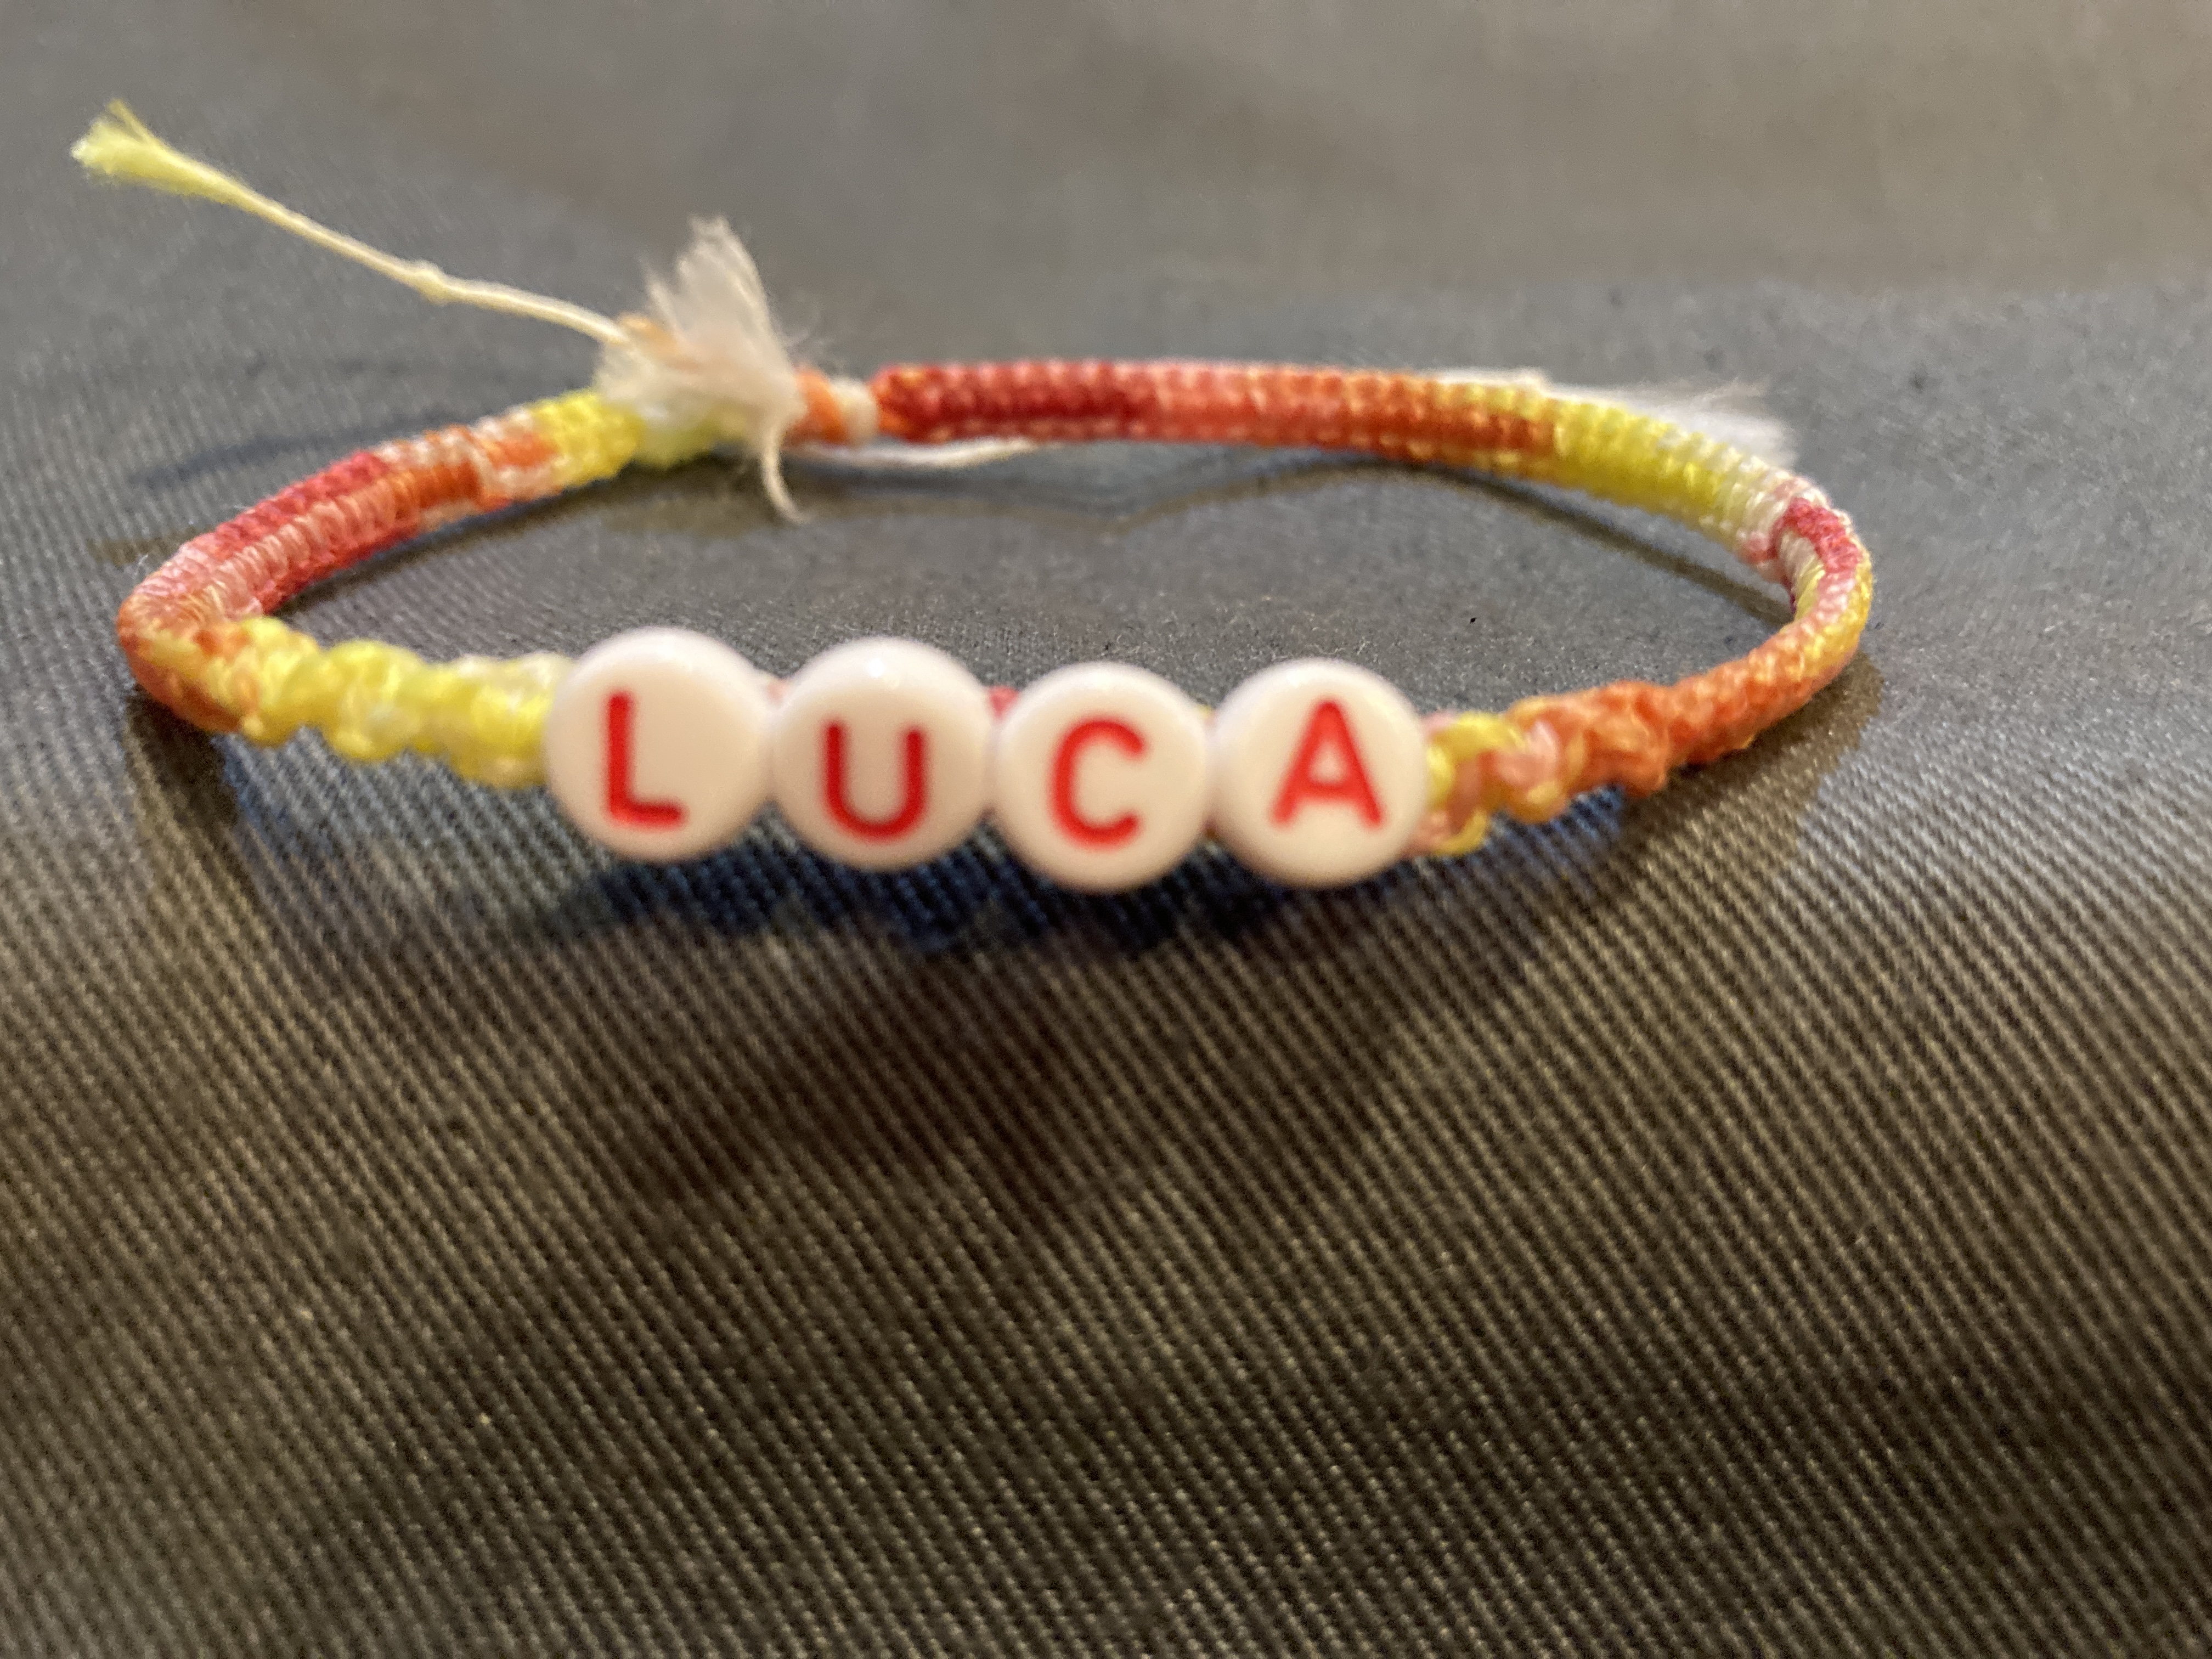 赤系グラデーション・白色の糸と「L U C A」のアルファベットビーズを使って編まれた手作りミサンガの写真